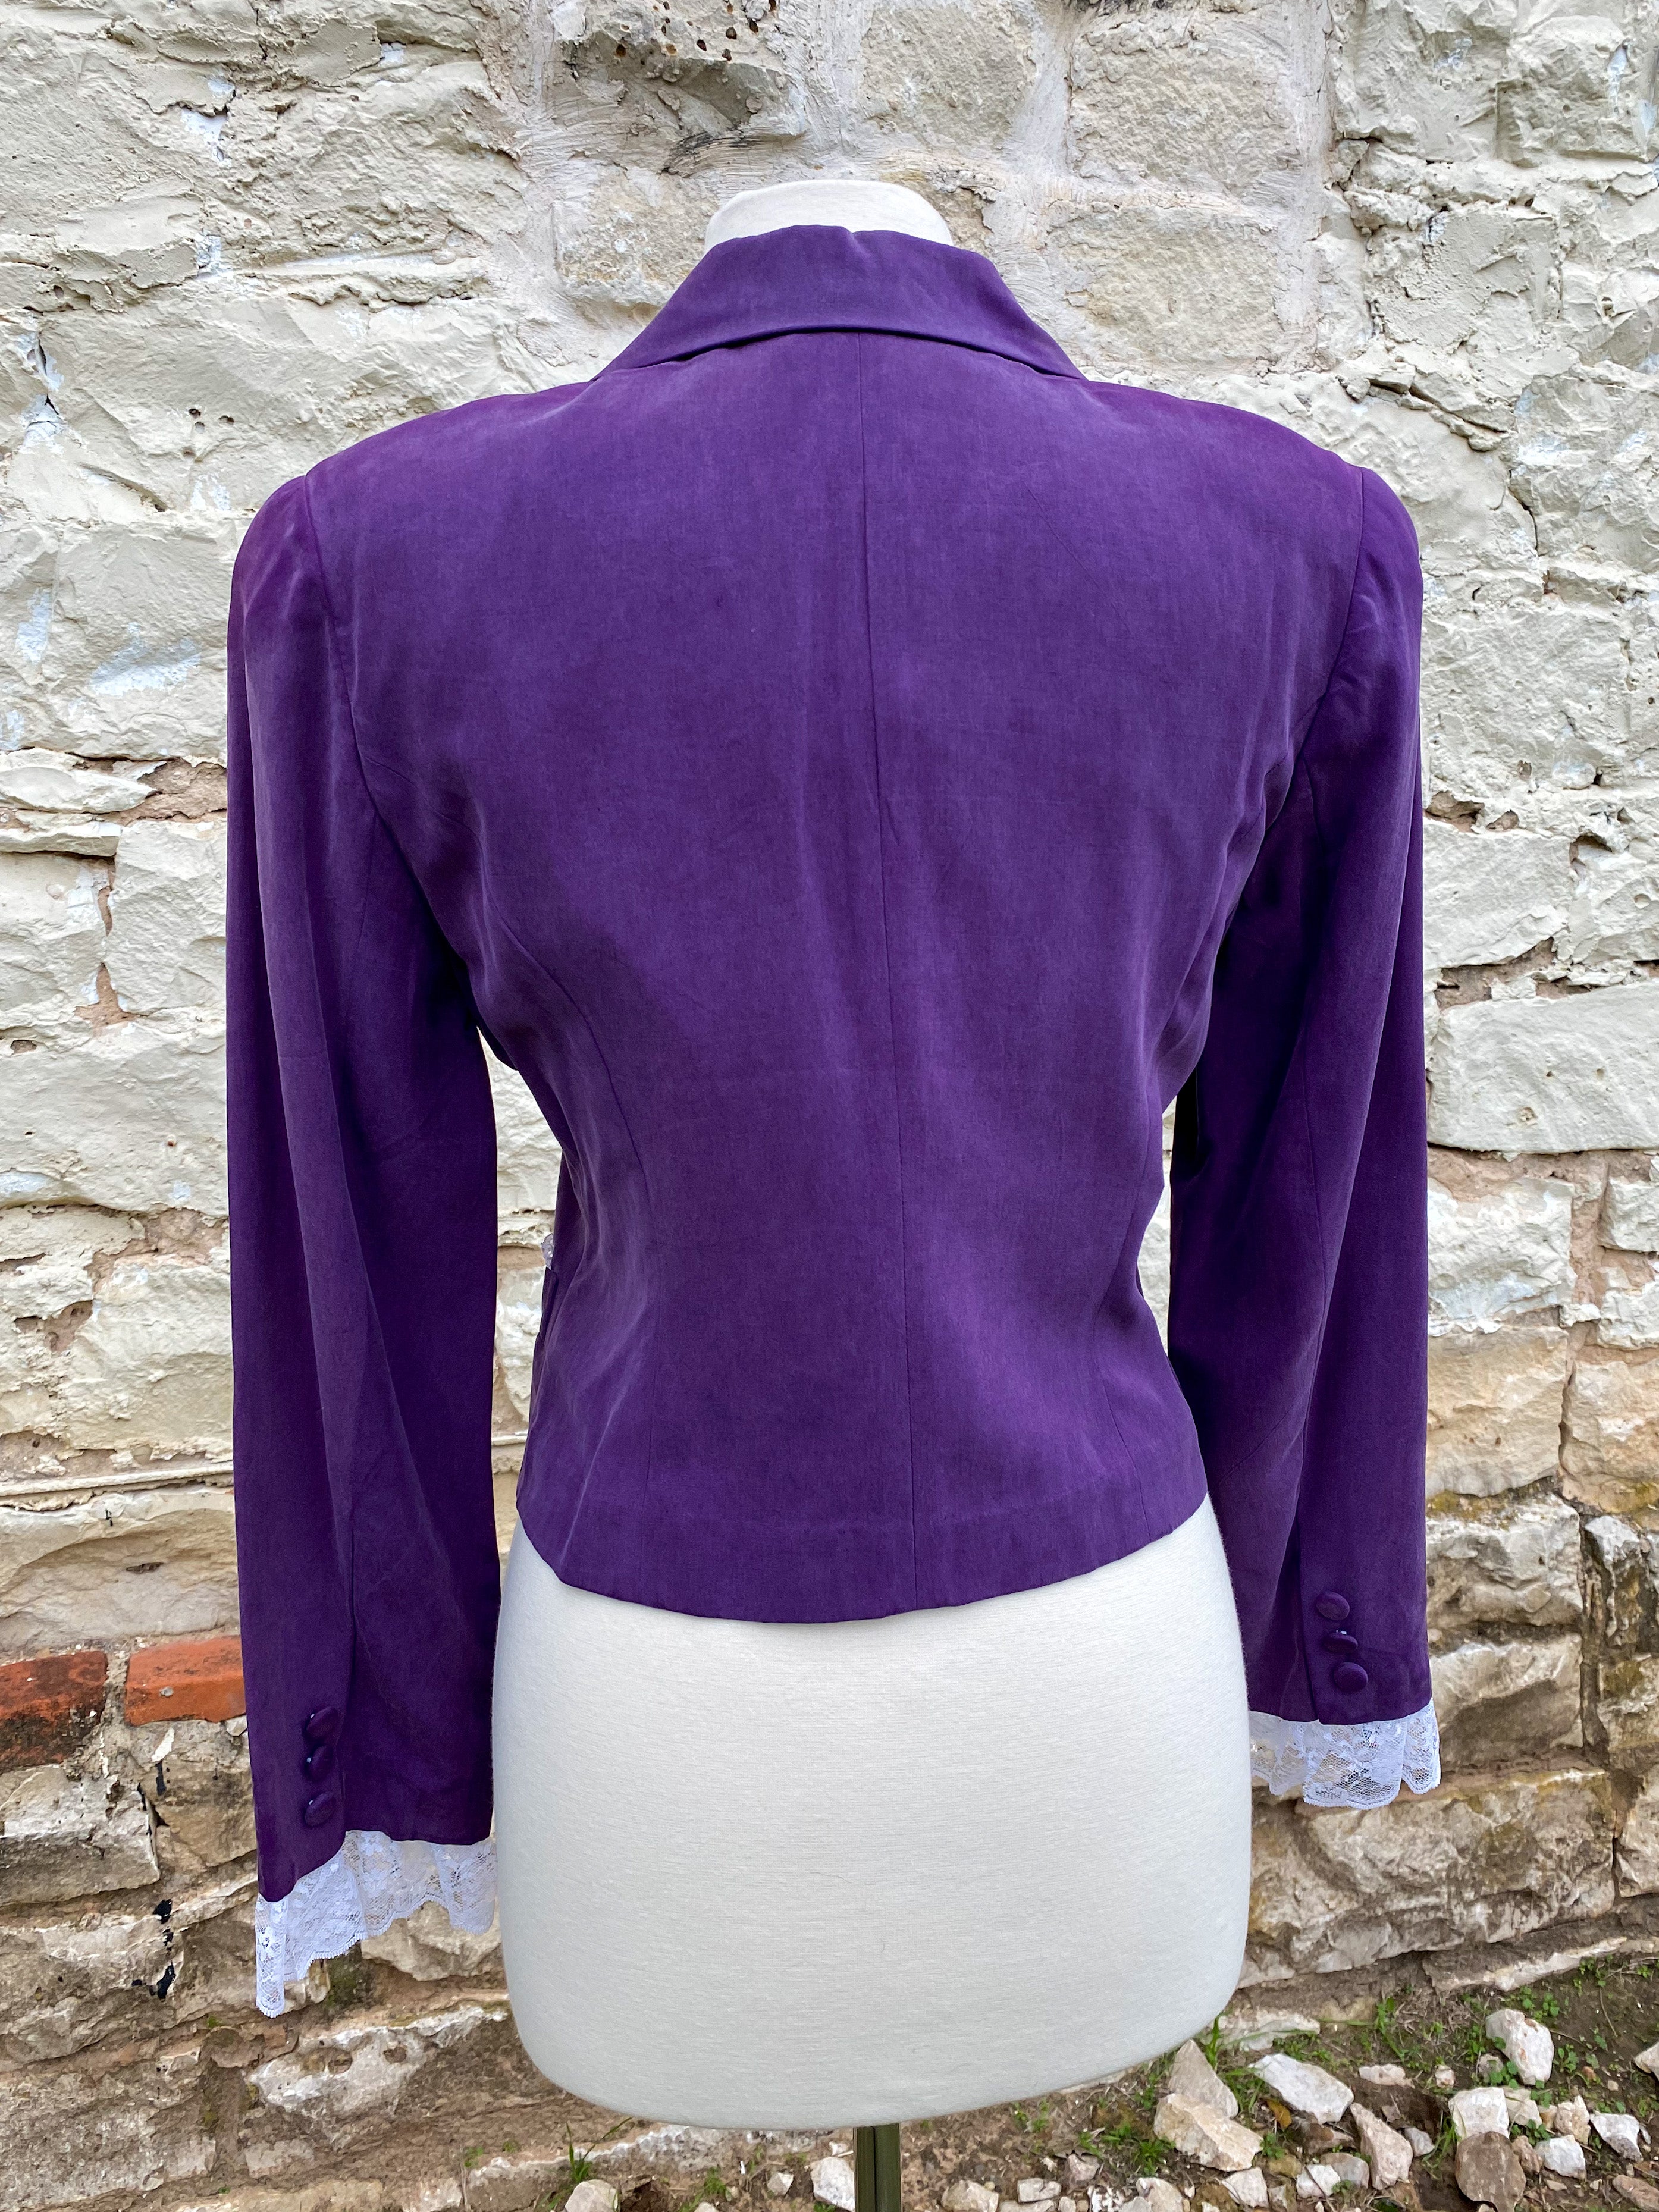 Short Purple Jacket with Brooch -Medium